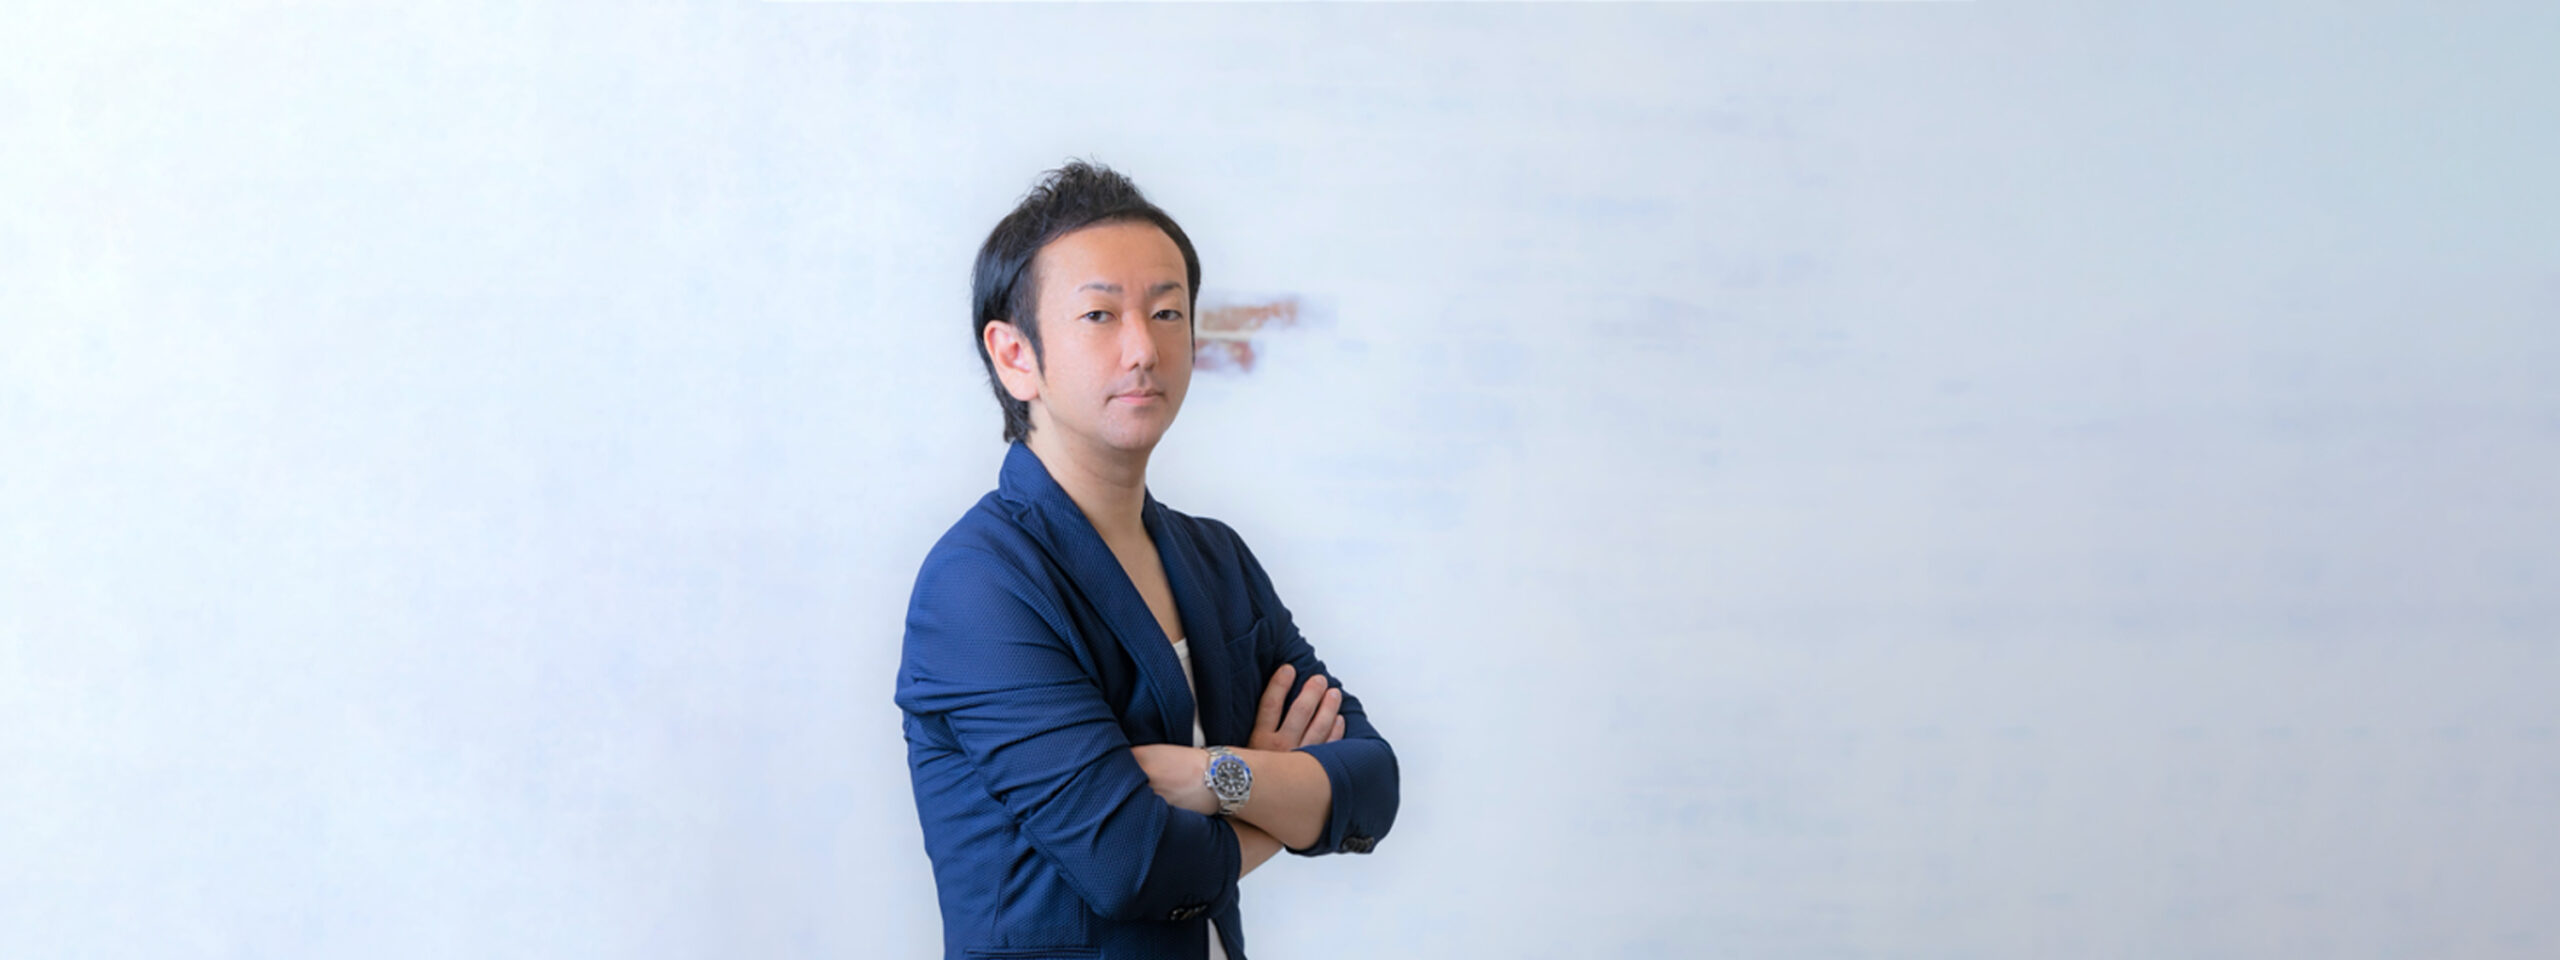 株式会社 EDUCATION design 代表取締役 小野田 一樹 (おのだ かずき) プロフィール画像